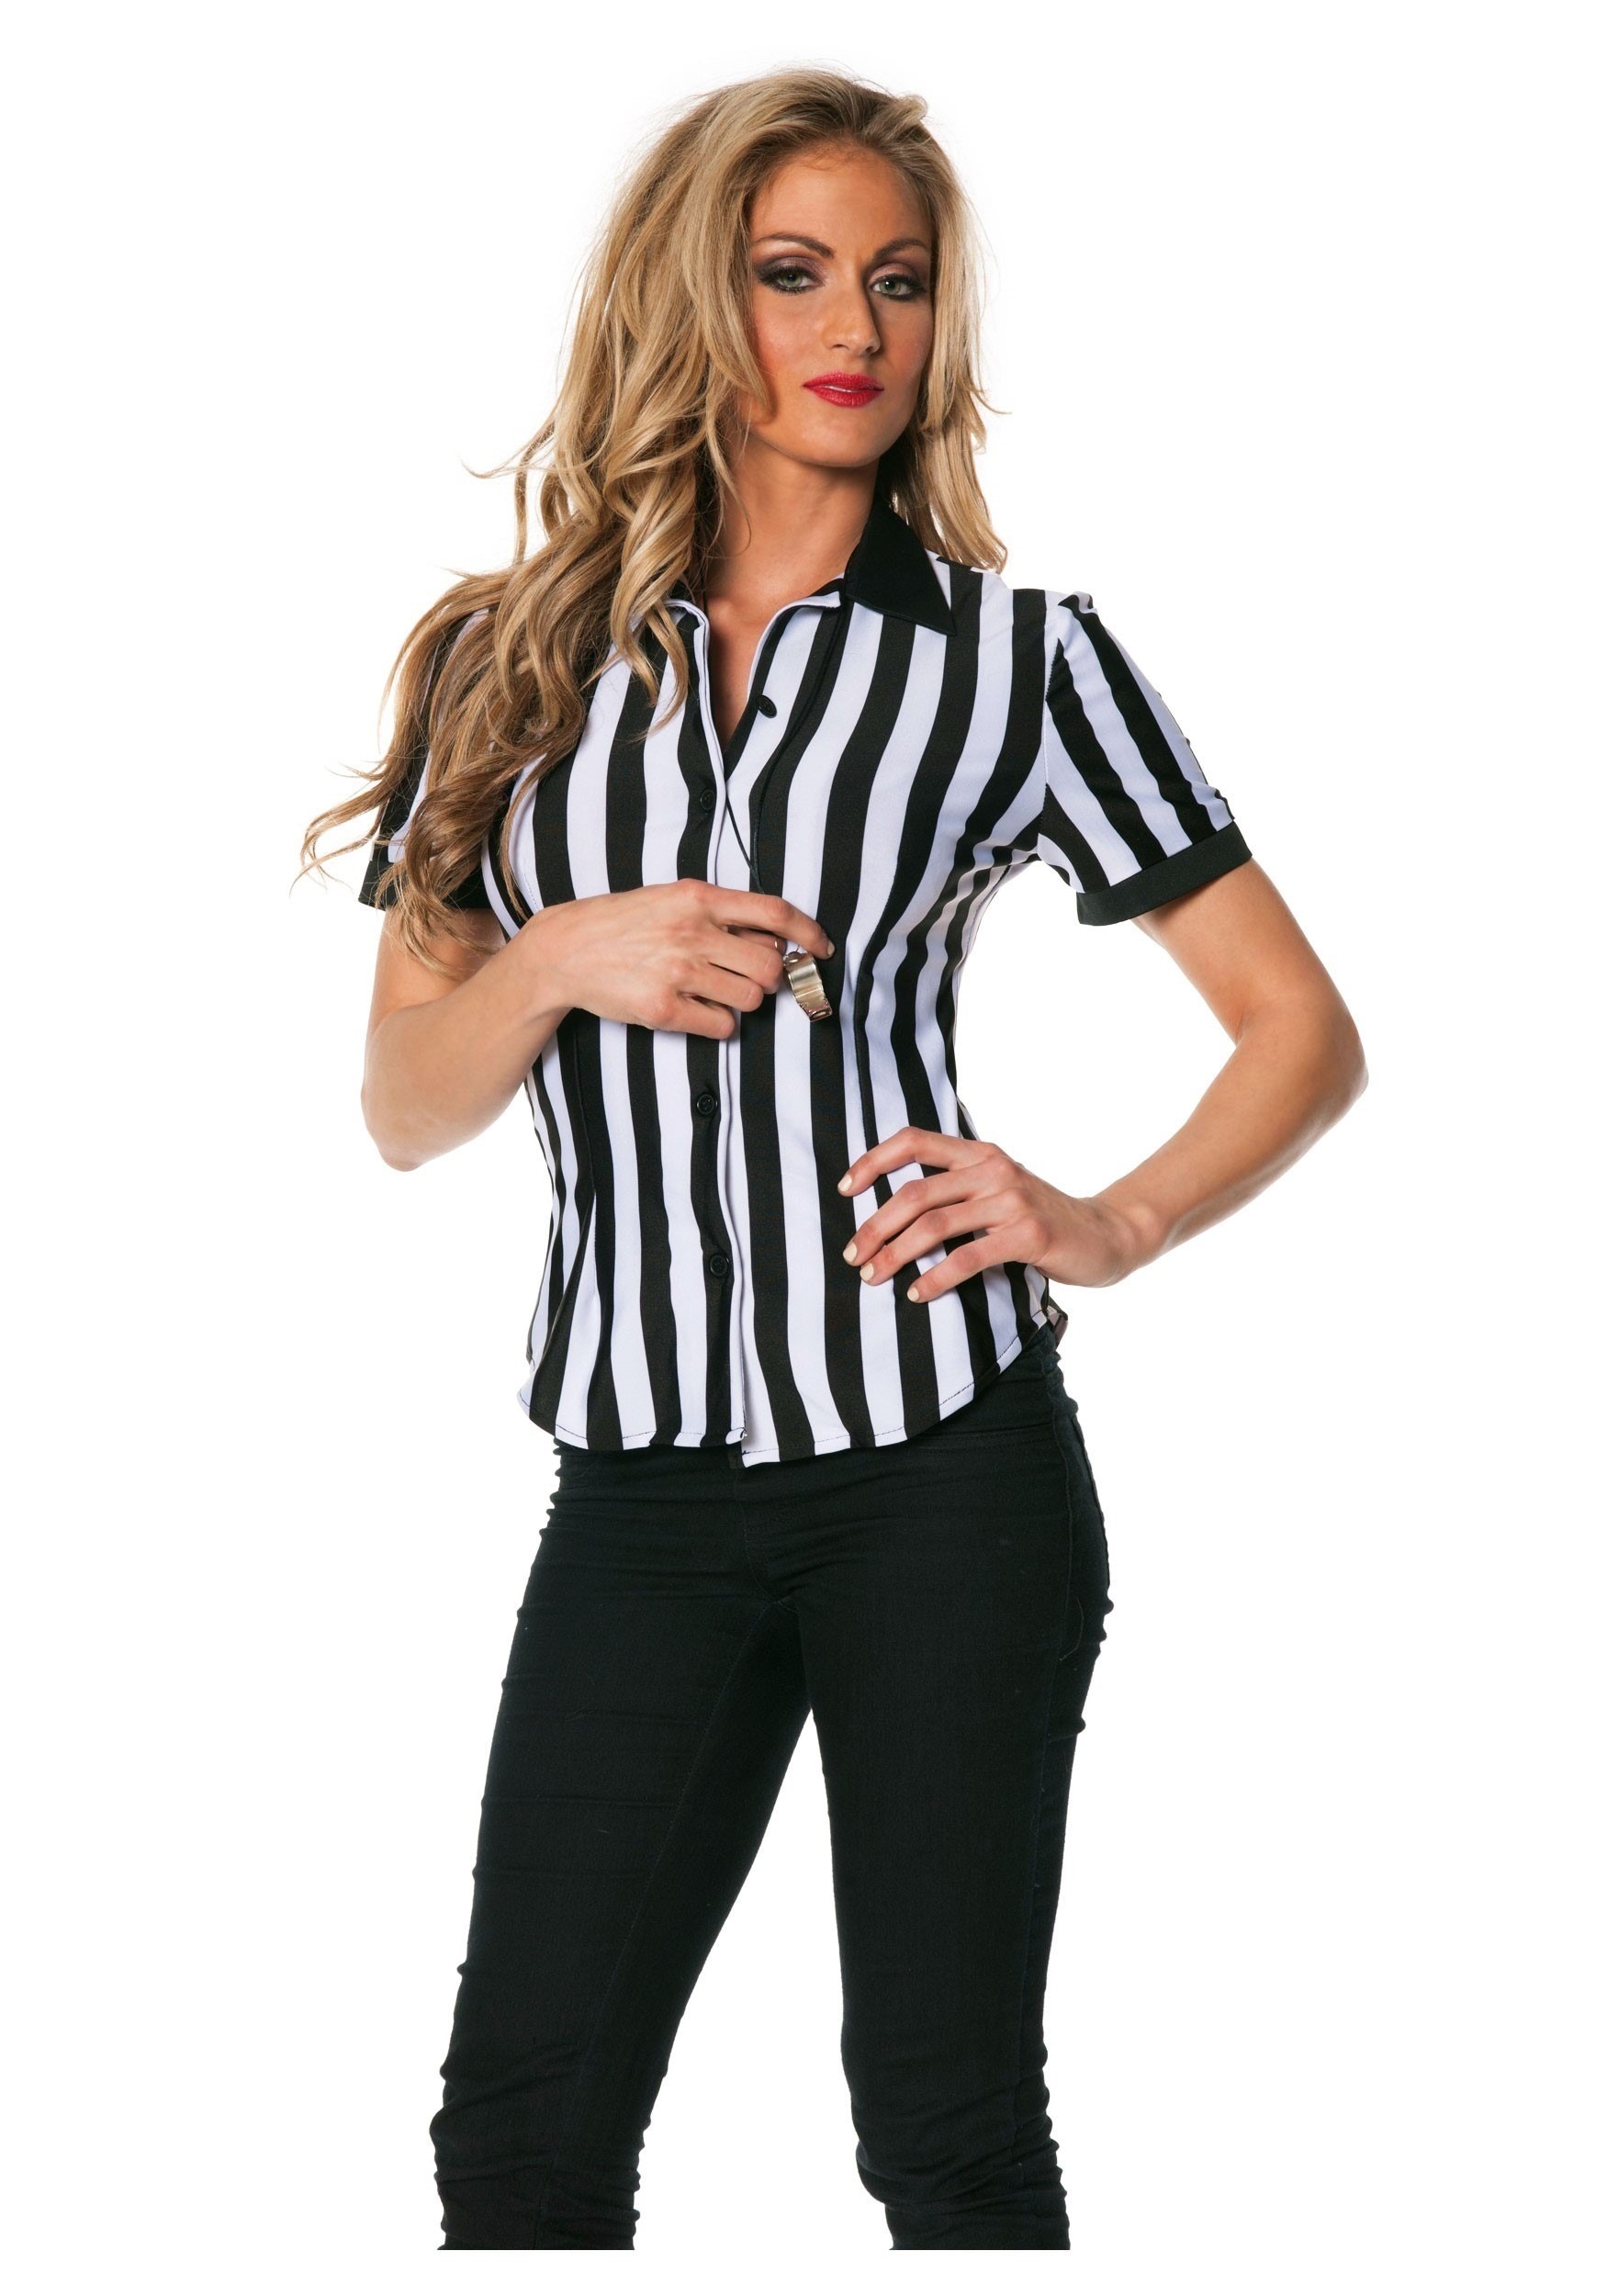 Referee Shirts Women Sexy 30